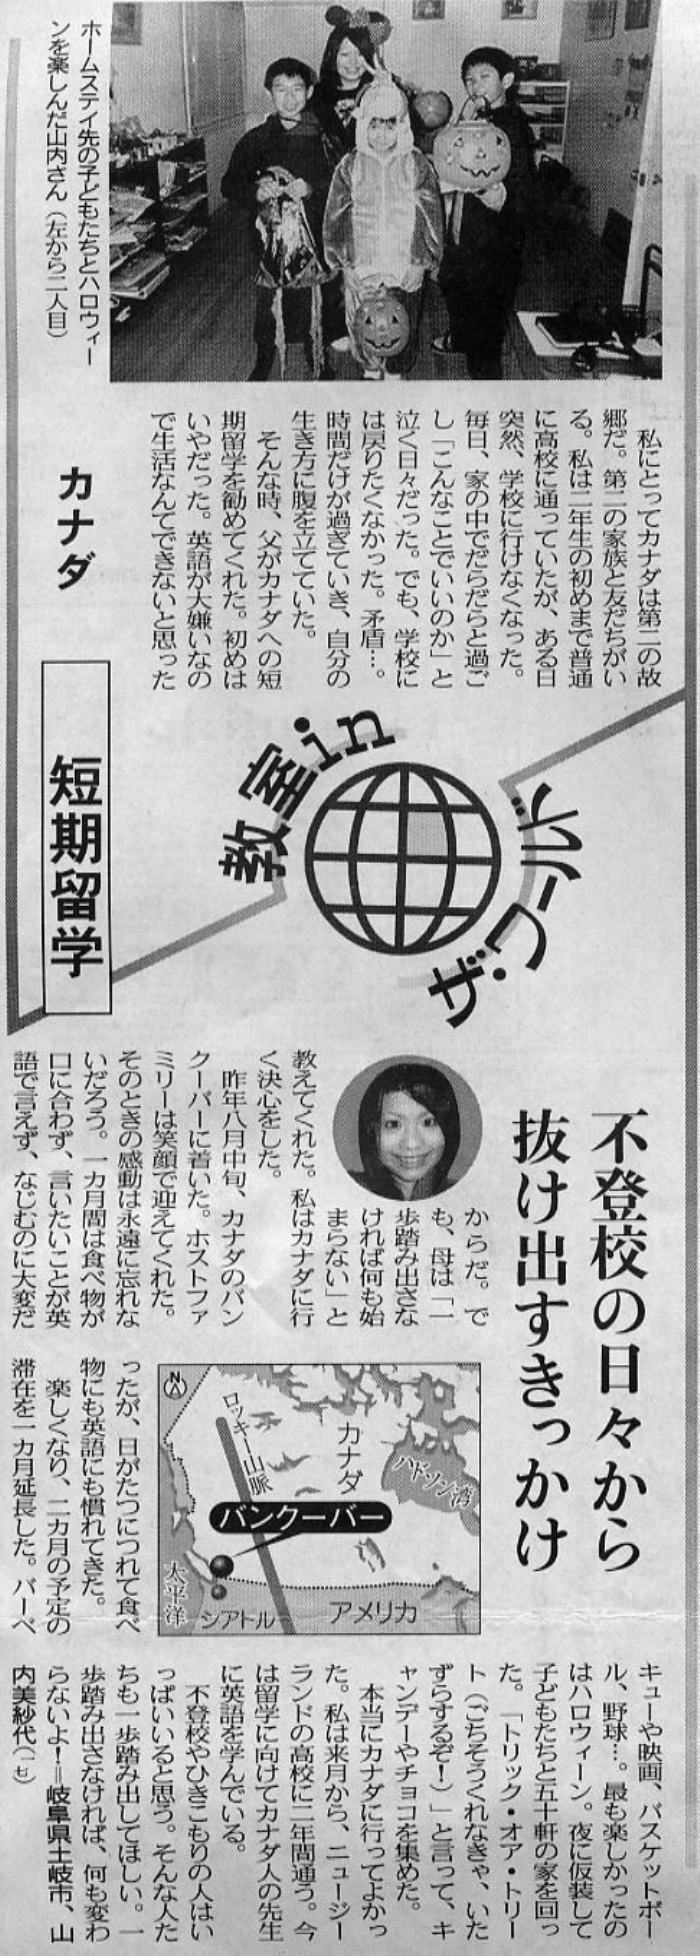 2006年1月30日の中日新聞での掲載記事